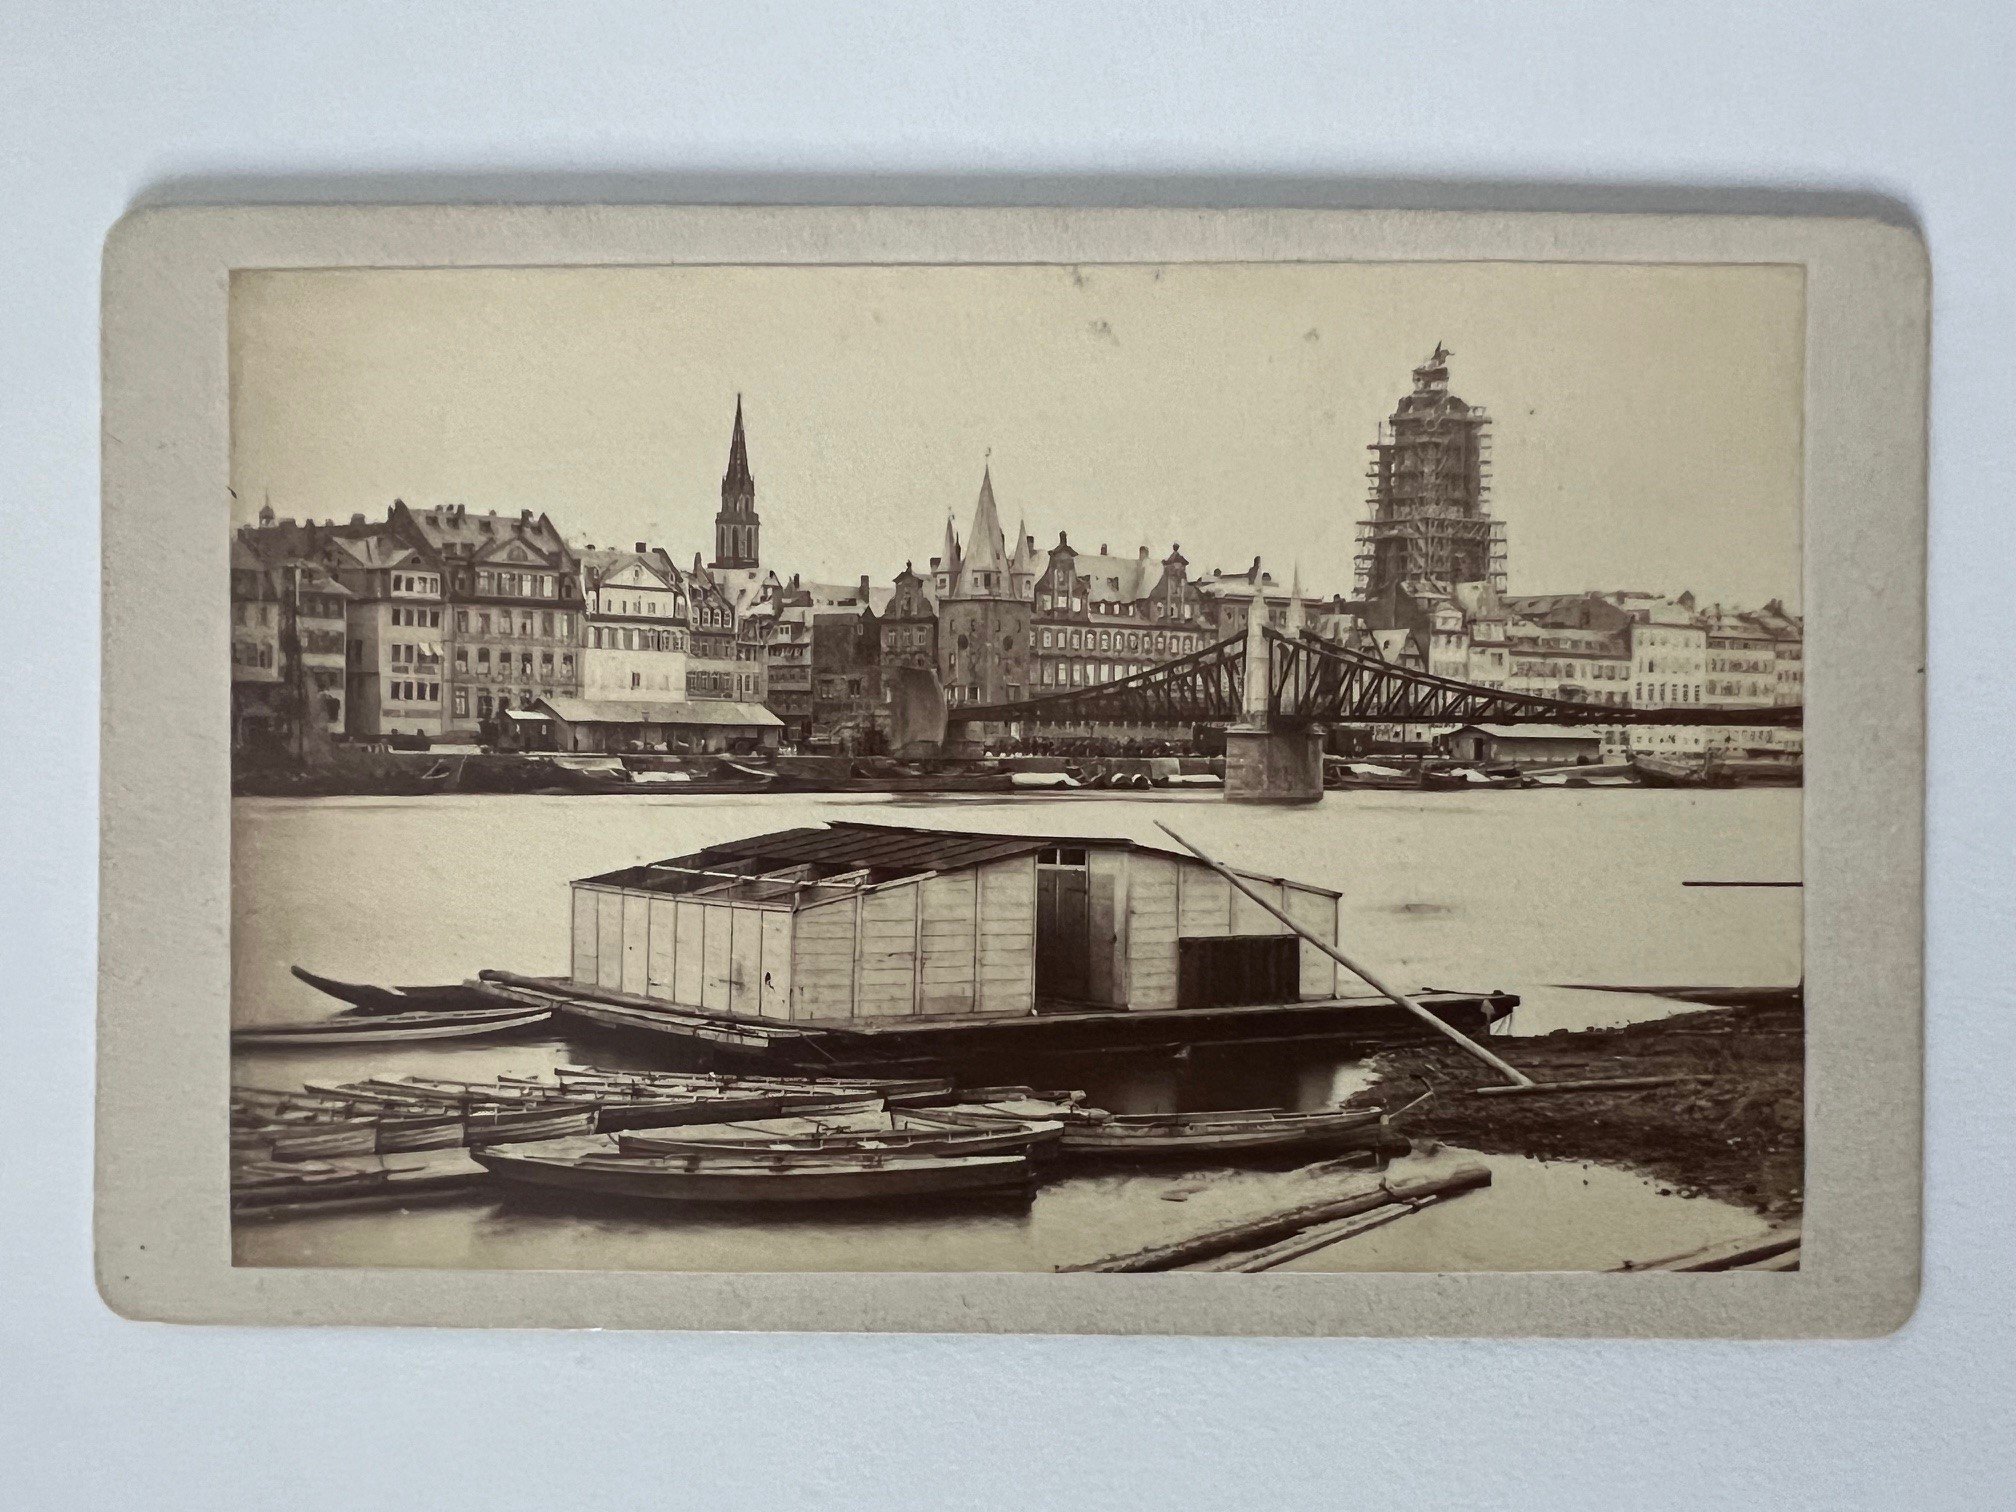 CdV, Theodor Creifelds, Frankfurt, Nr. 403, Panorama von Frankfurt mit Steg, ca. 1870. (Taunus-Rhein-Main - Regionalgeschichtliche Sammlung Dr. Stefan Naas CC BY-NC-SA)